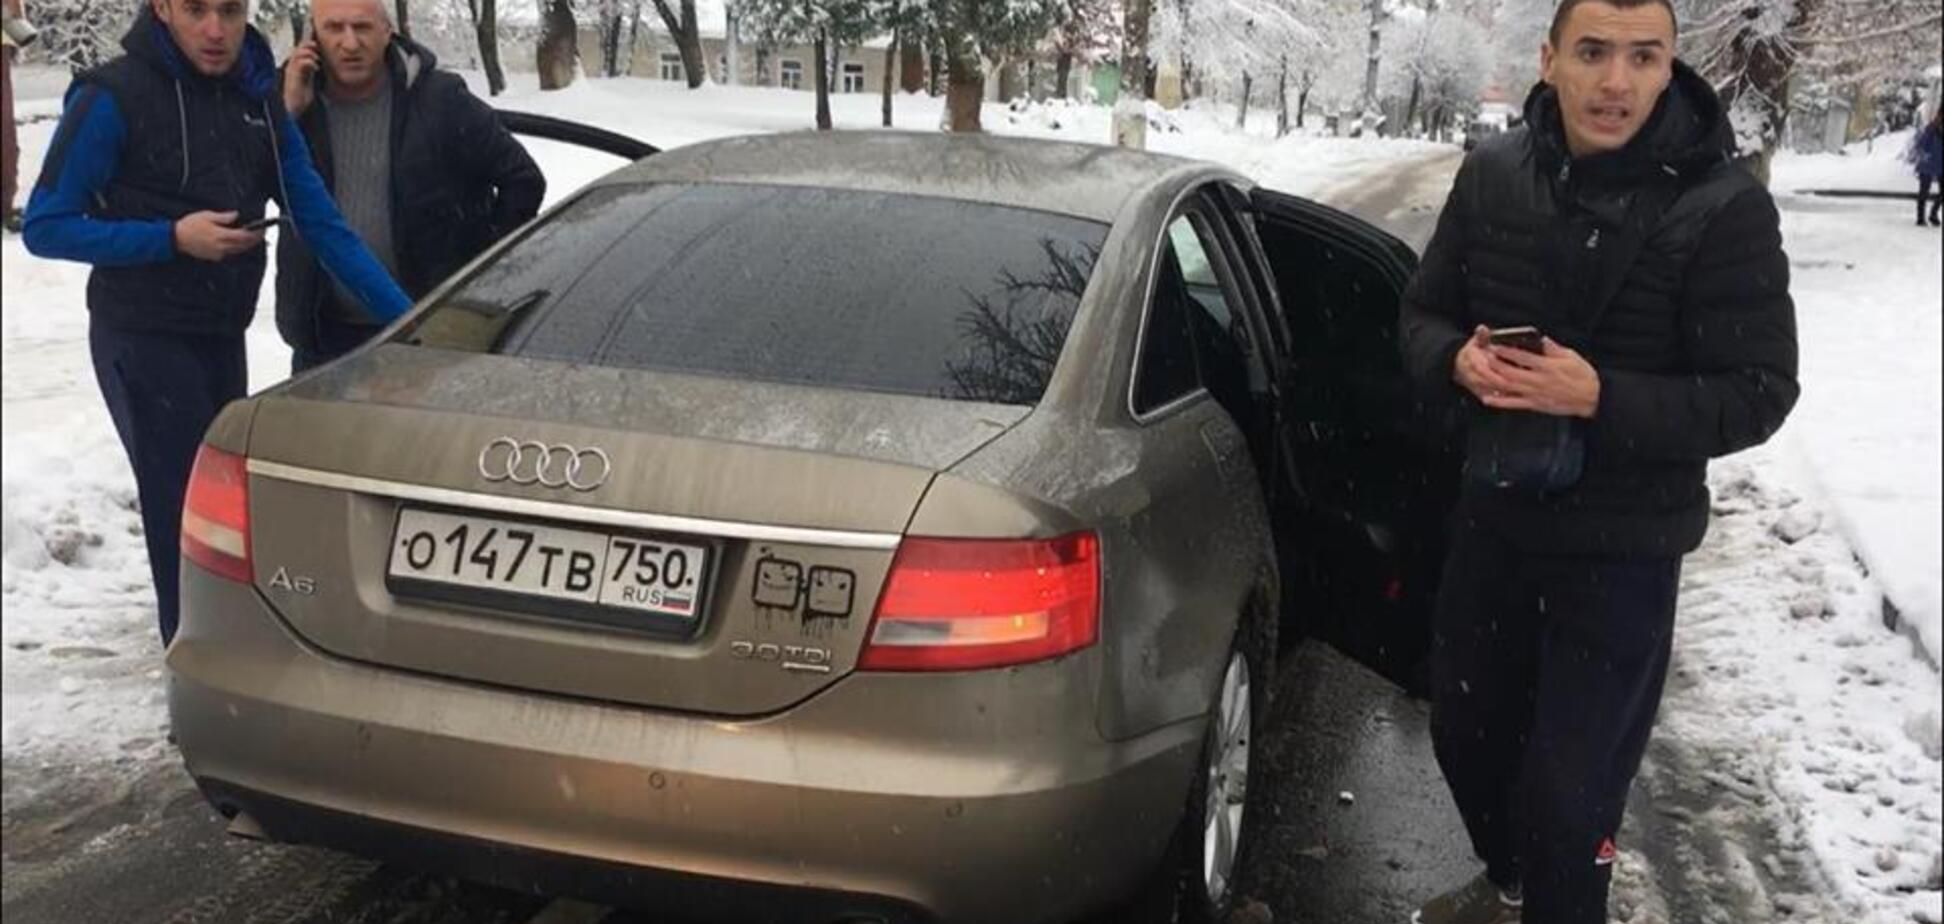 ''Атошник еб*ный!'' На Прикарпатье мужчины на авто с российскими номерами избили воина